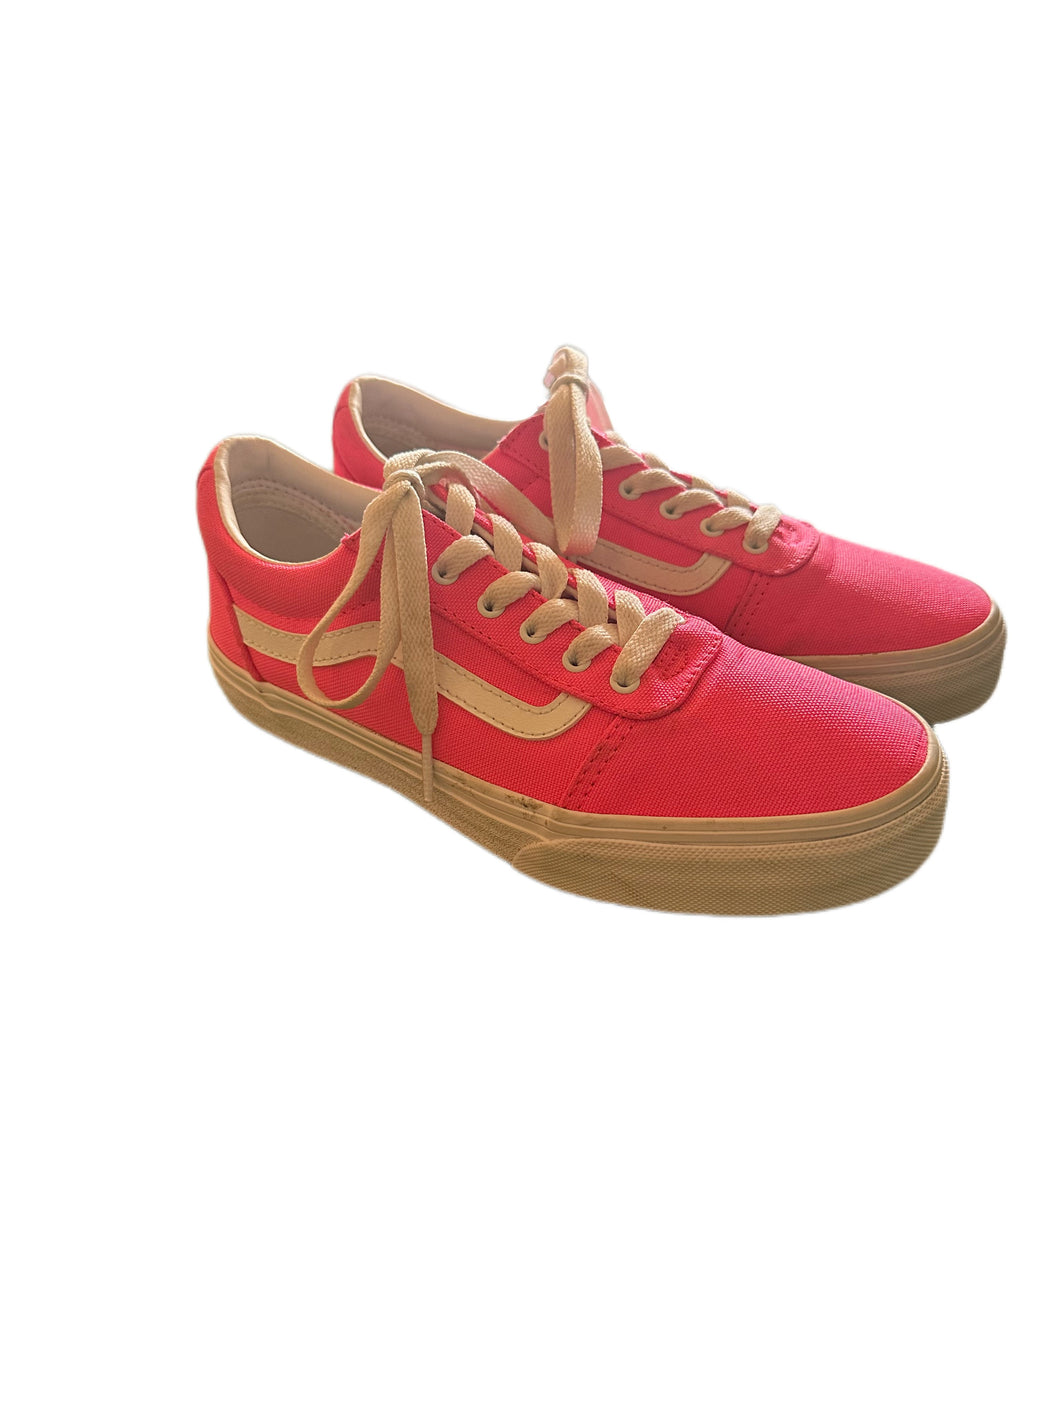 VANS Hot Pink Low Top Sneakers (SZ 4)